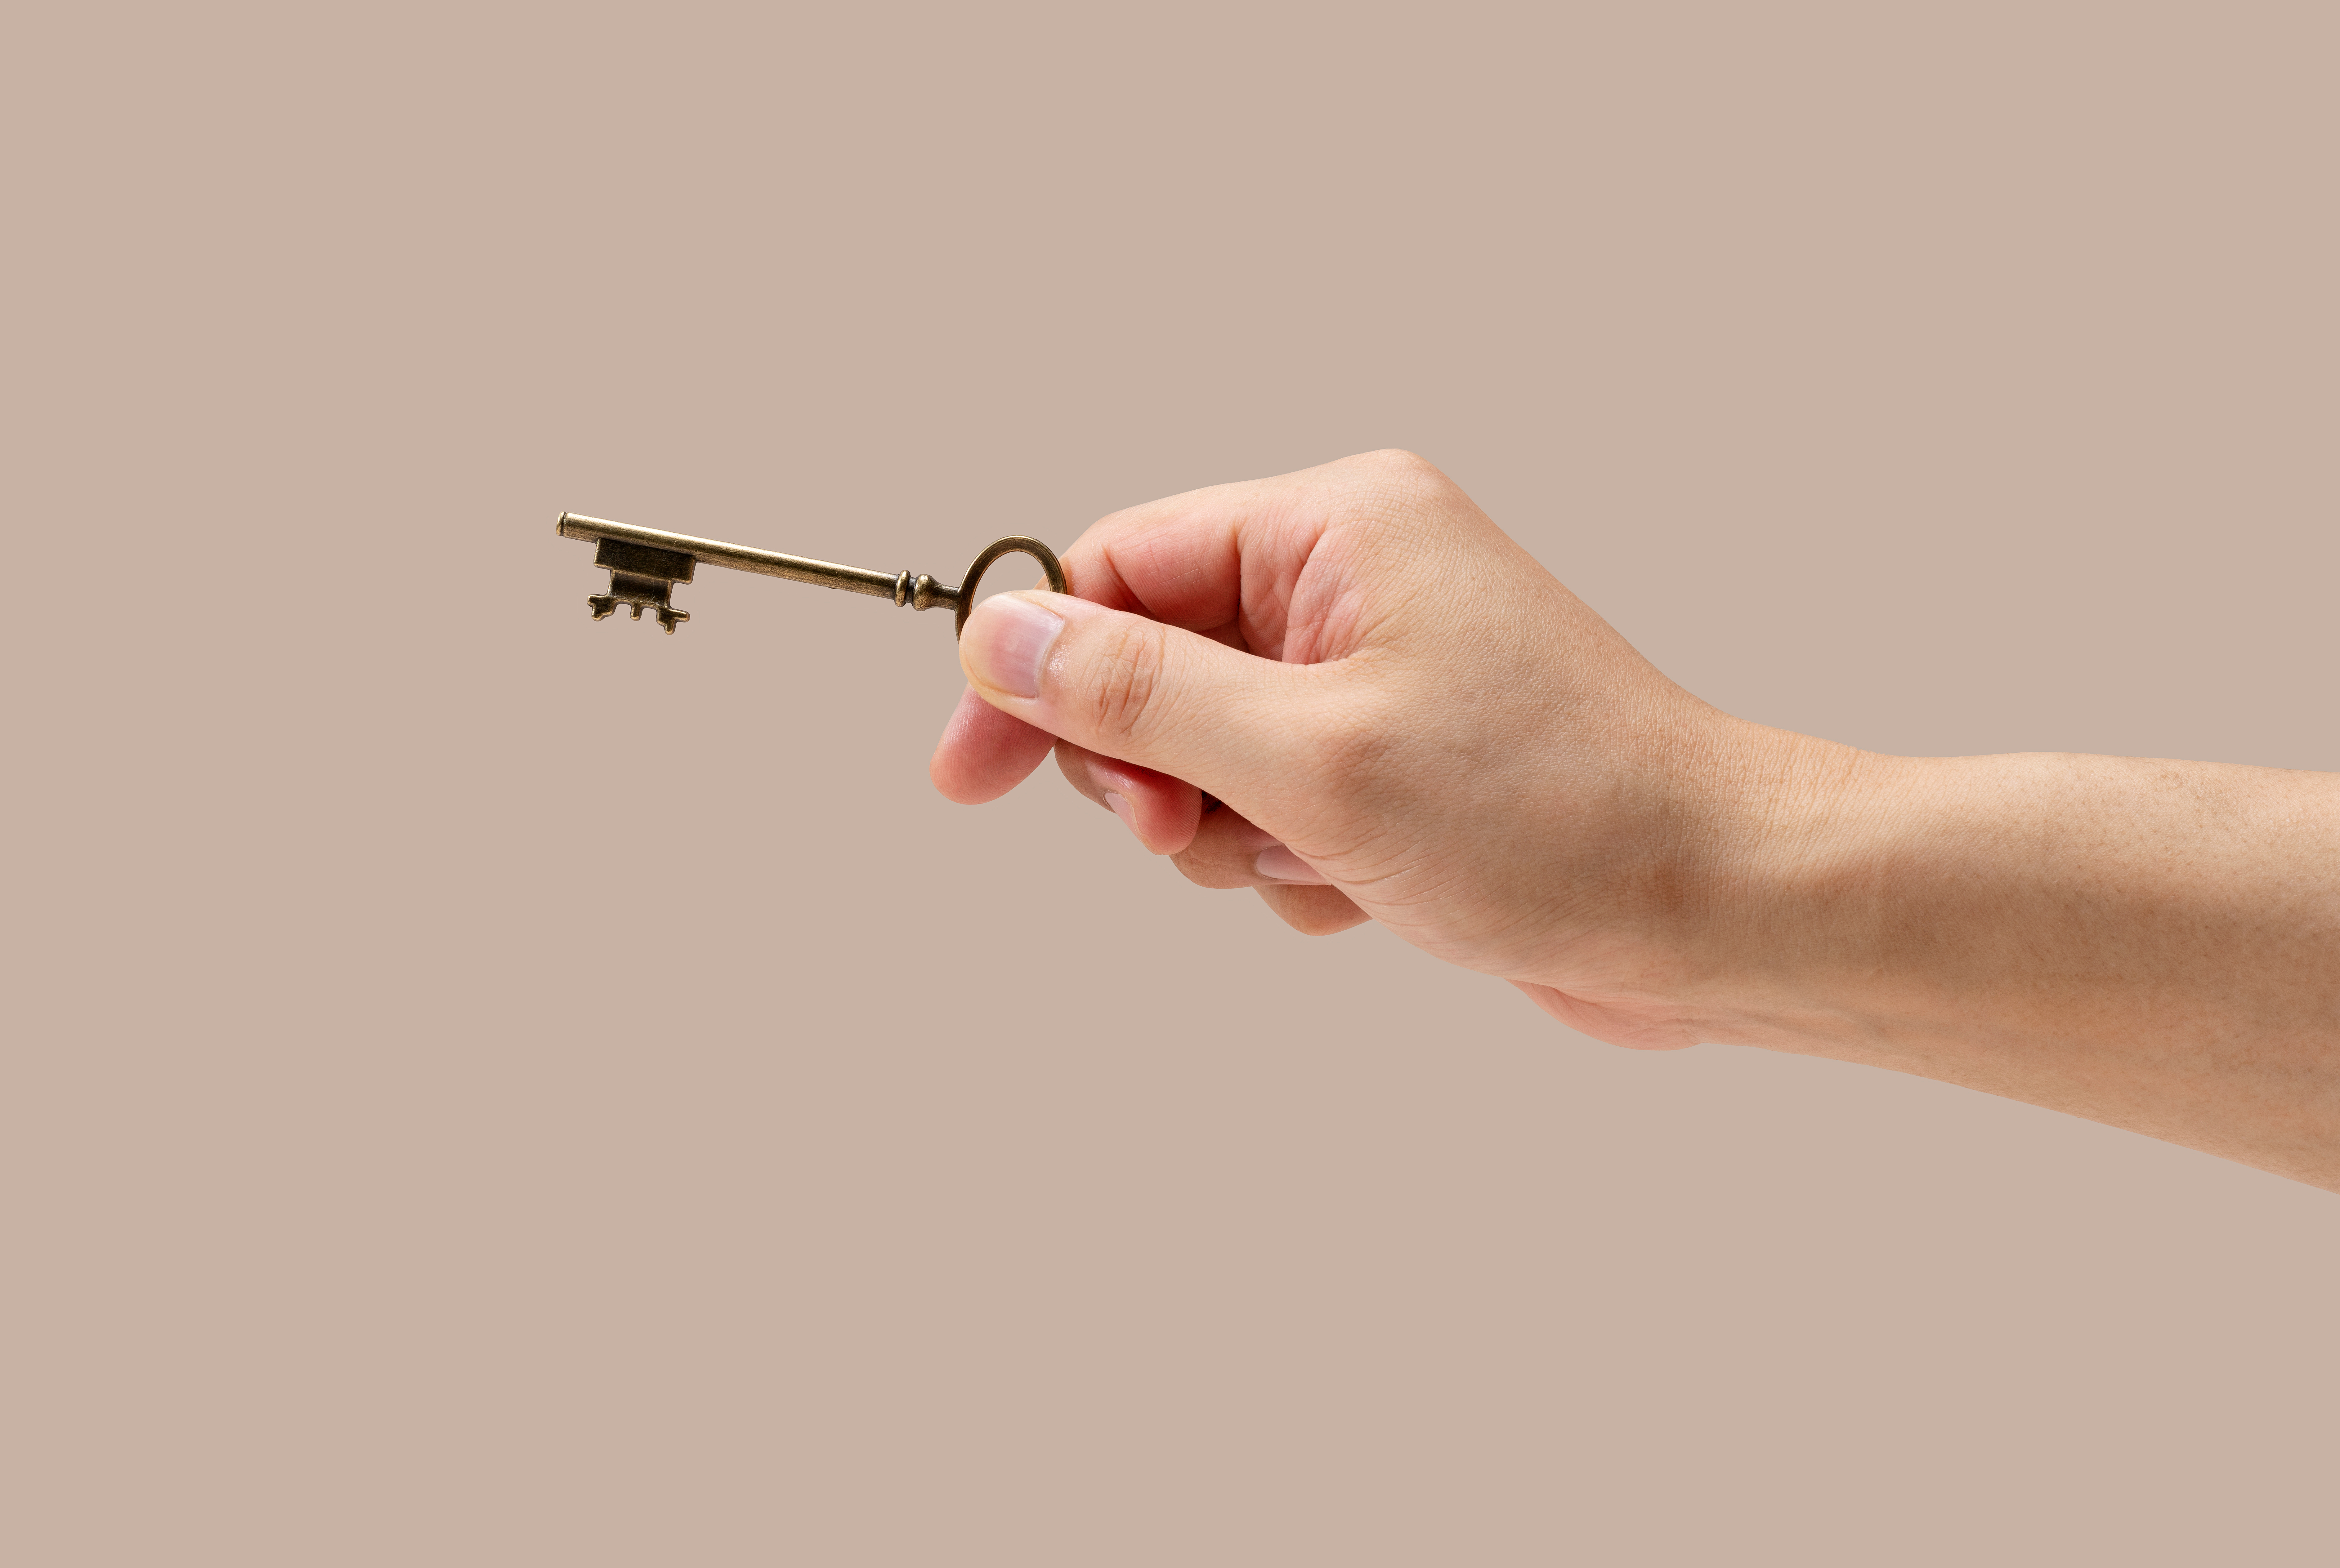 La mano de un hombre sujetando una llave de latón | Fuente: Shutterstock